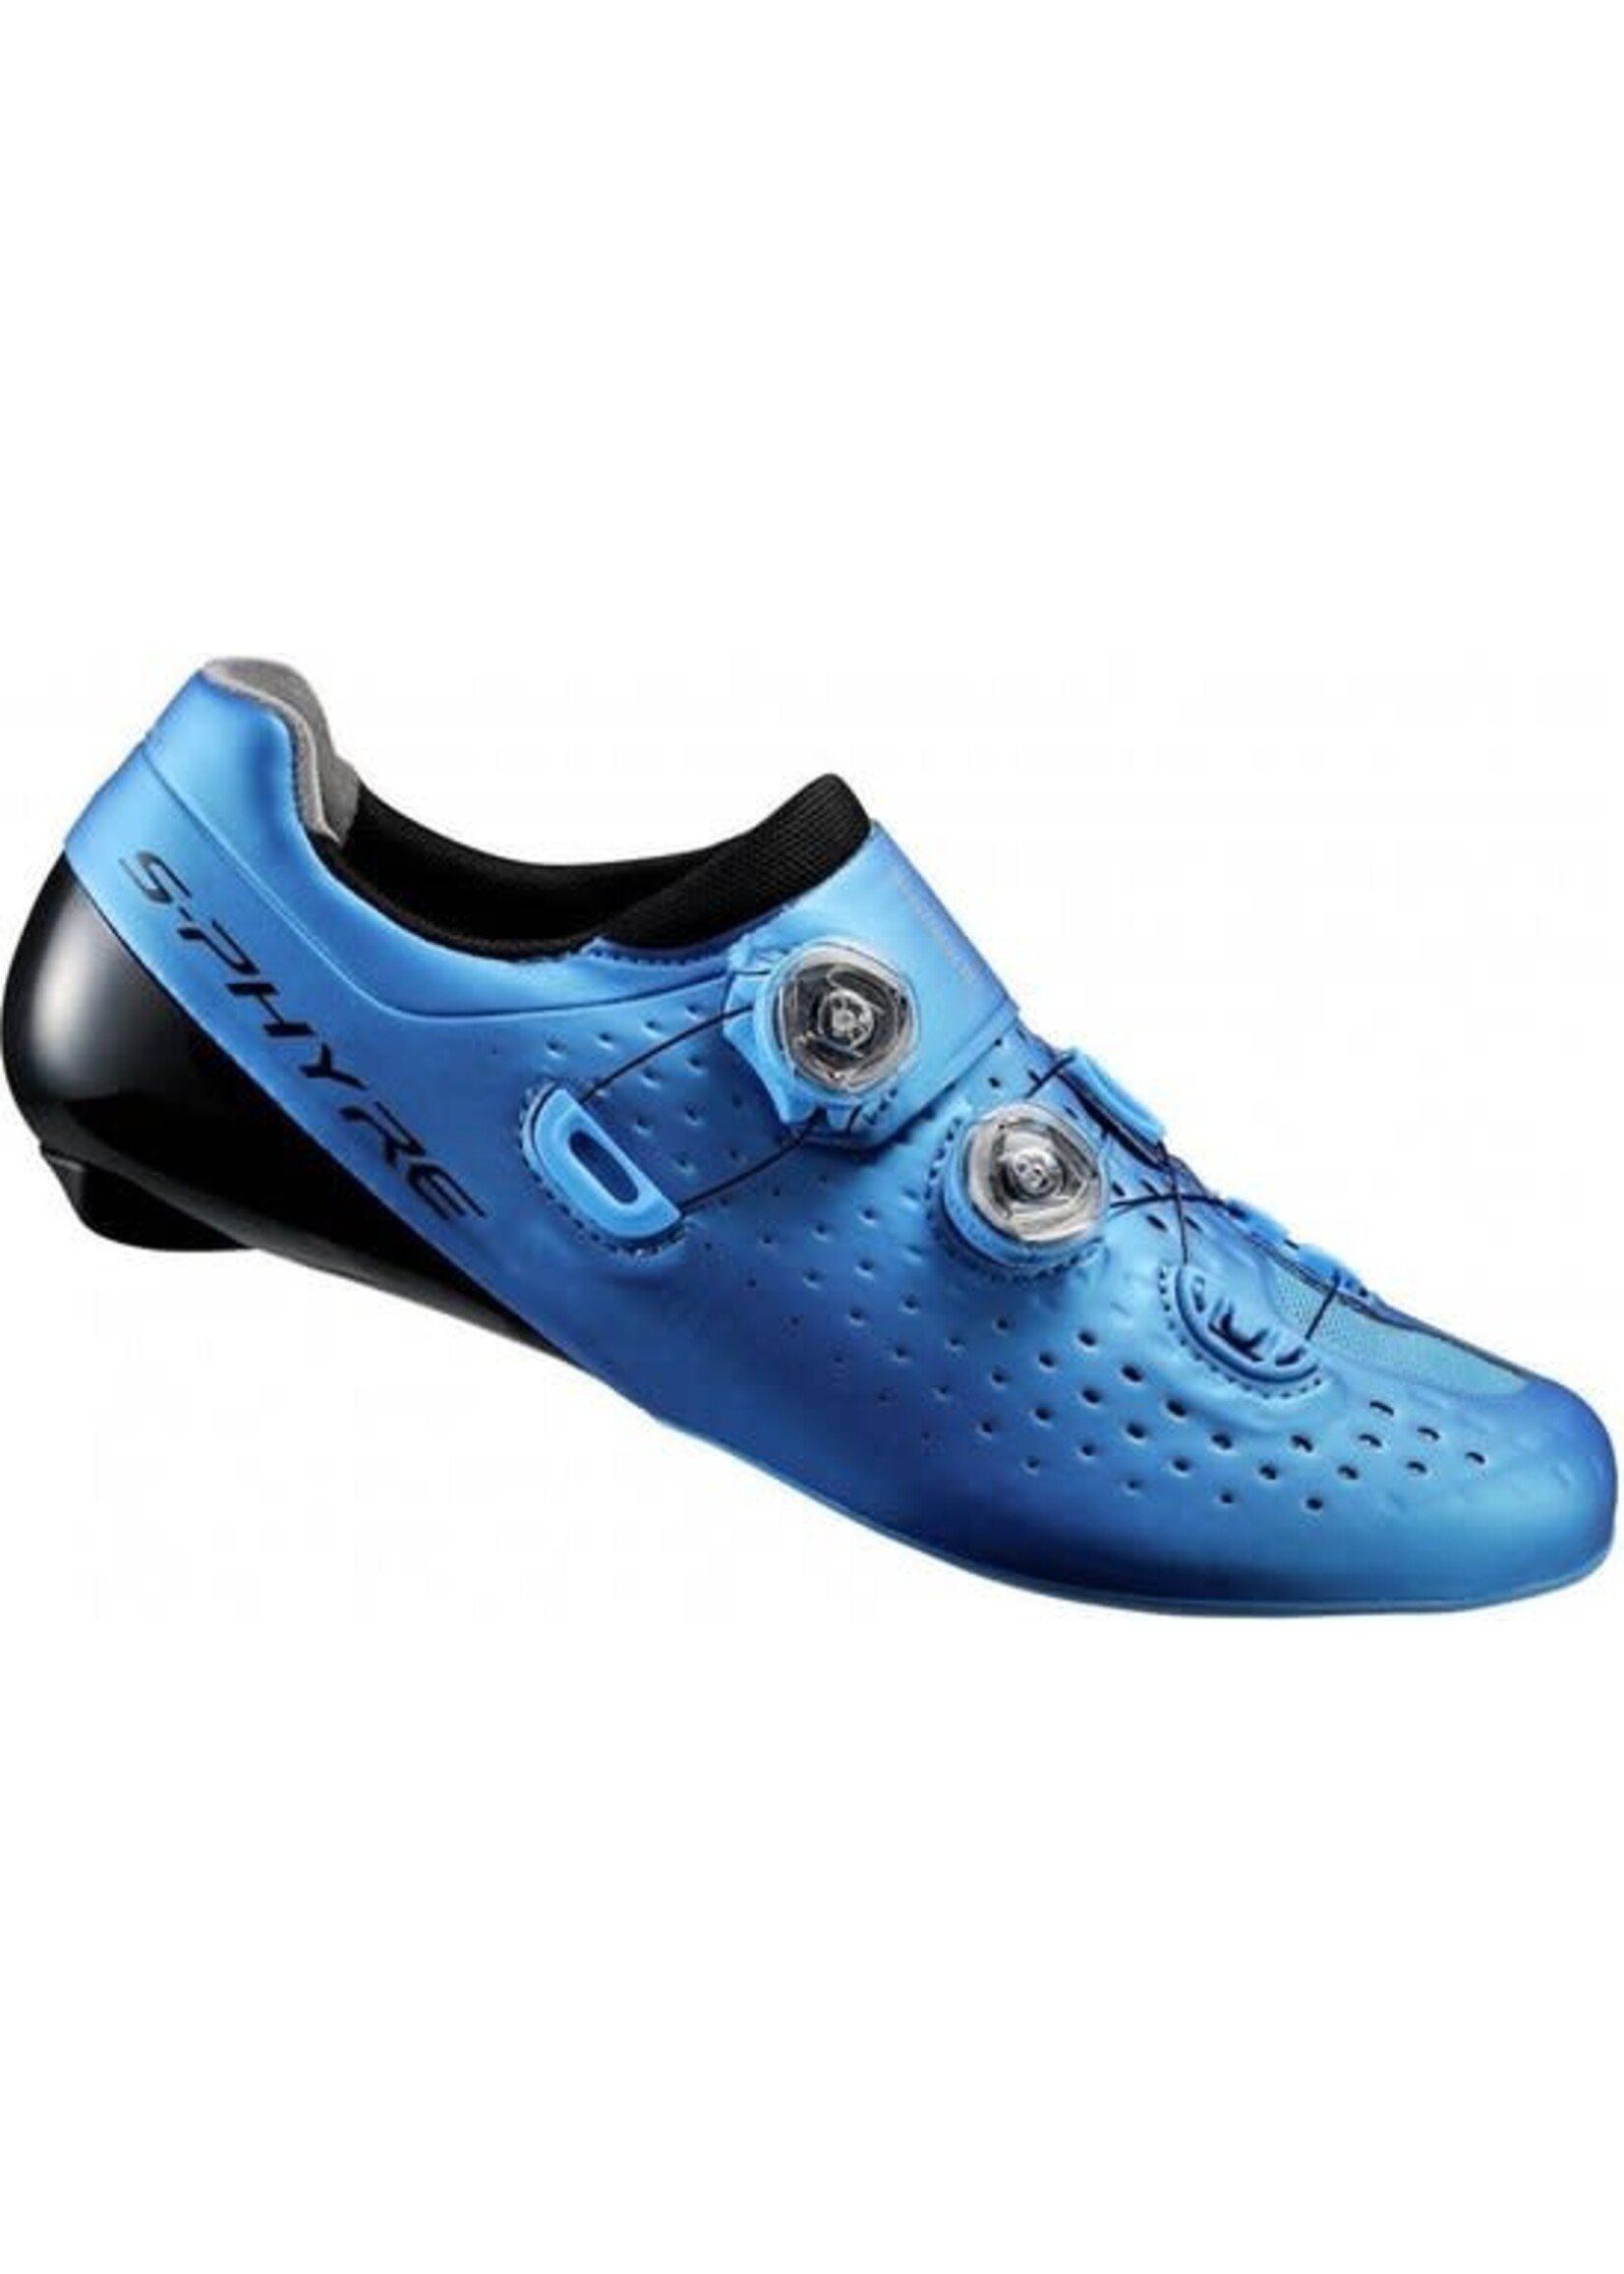 SHI SH-RC9 Bicycle Shoes BLUE 39.0